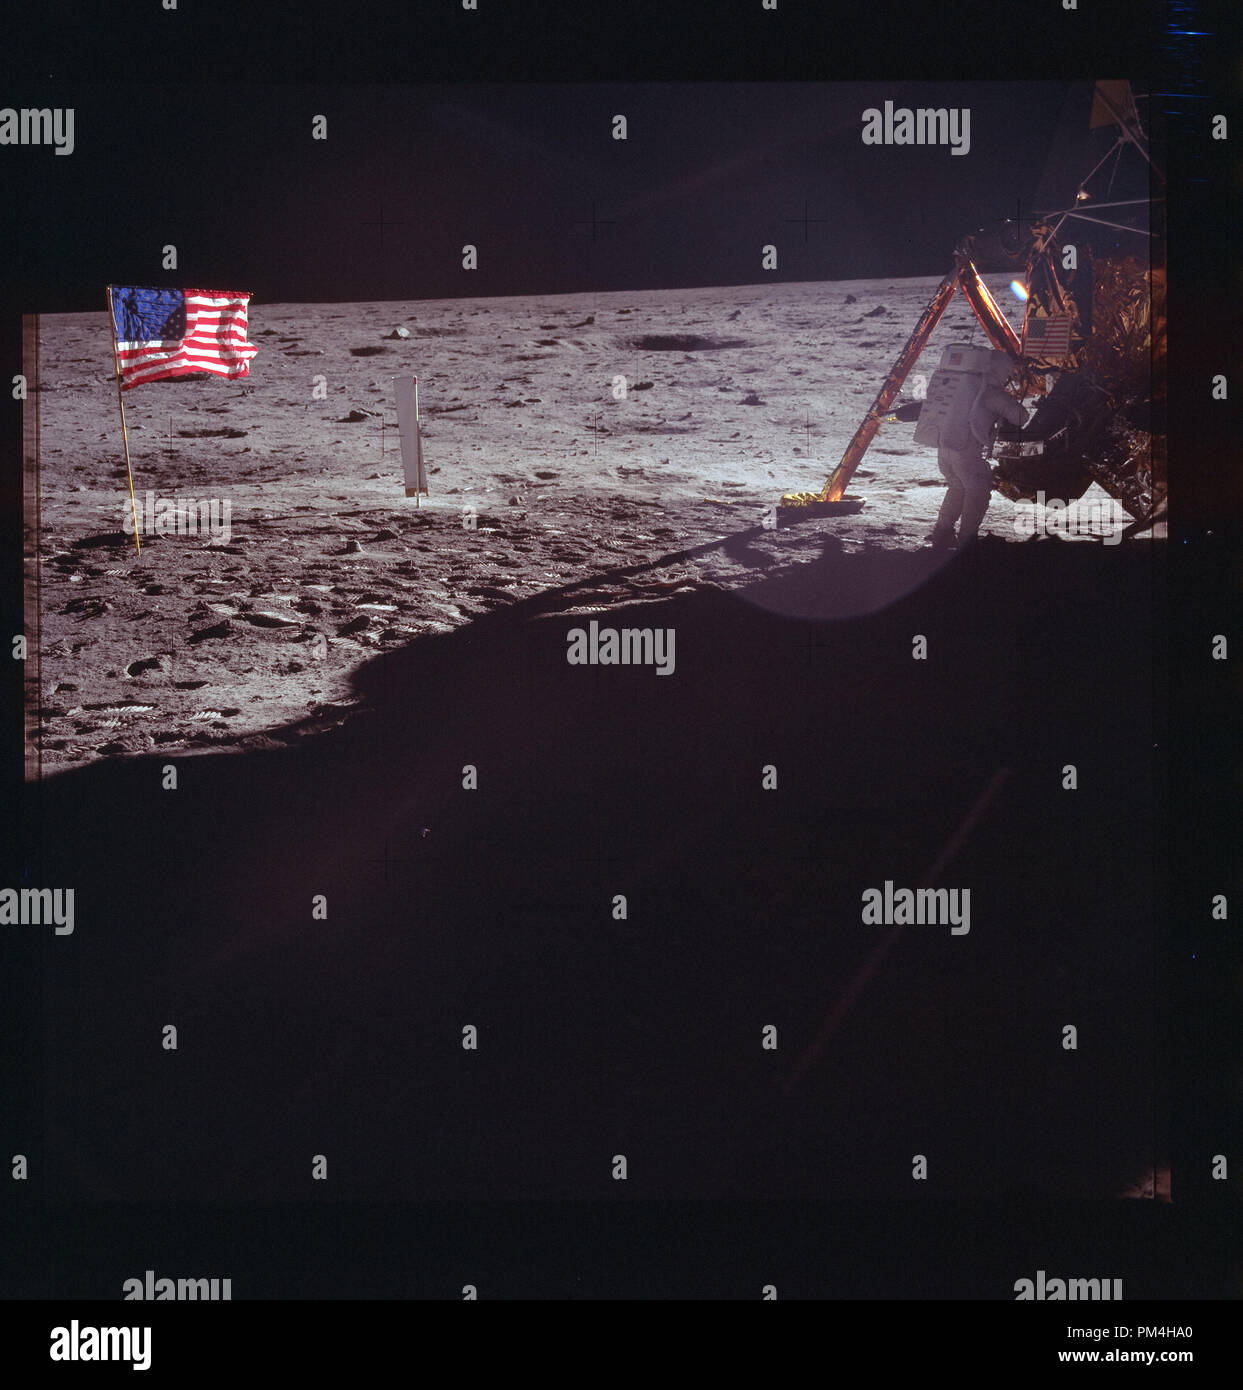 Die amerikanische Flagge und Mondlandung Modul auf dem Mond im Juli 20, 1969 Geschichte Die Reise zum Mond. Datei Referenz Nr. 1003 264 THA Stockfoto